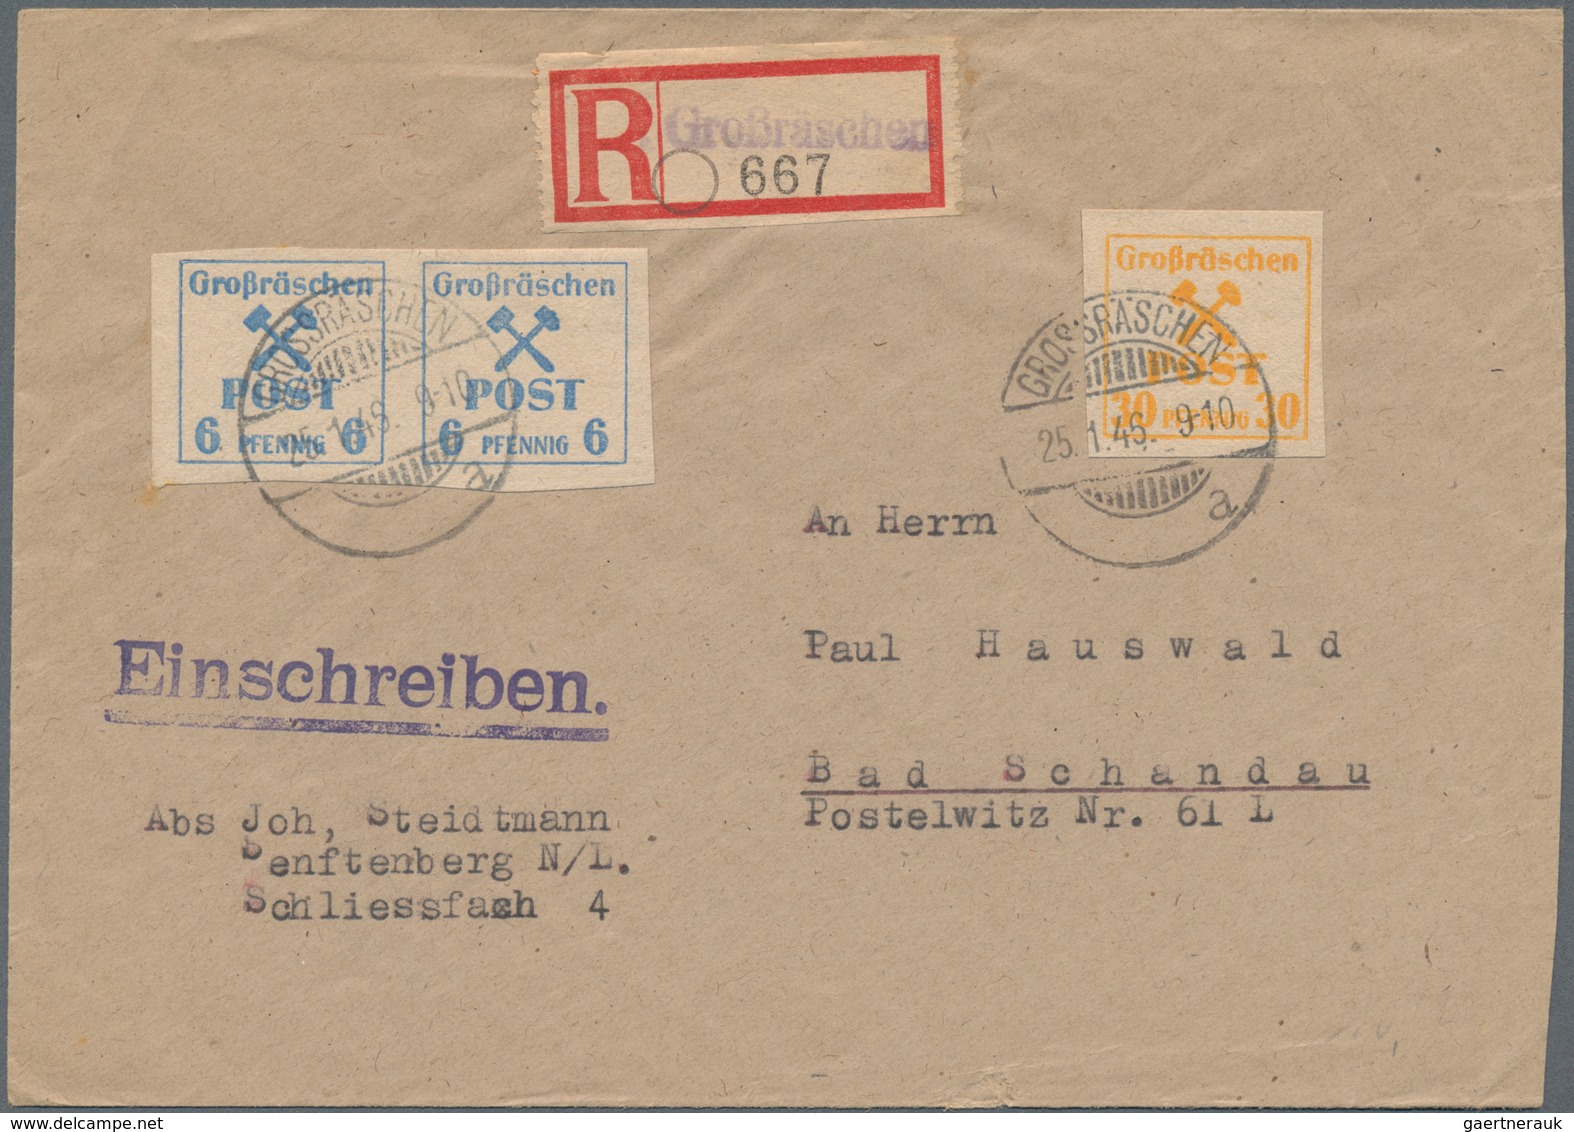 Deutsche Lokalausgaben ab 1945: GROSSRÄSCHEN: 1945/1946, Lot von 24 Briefen/Karten, soweit ersichtli